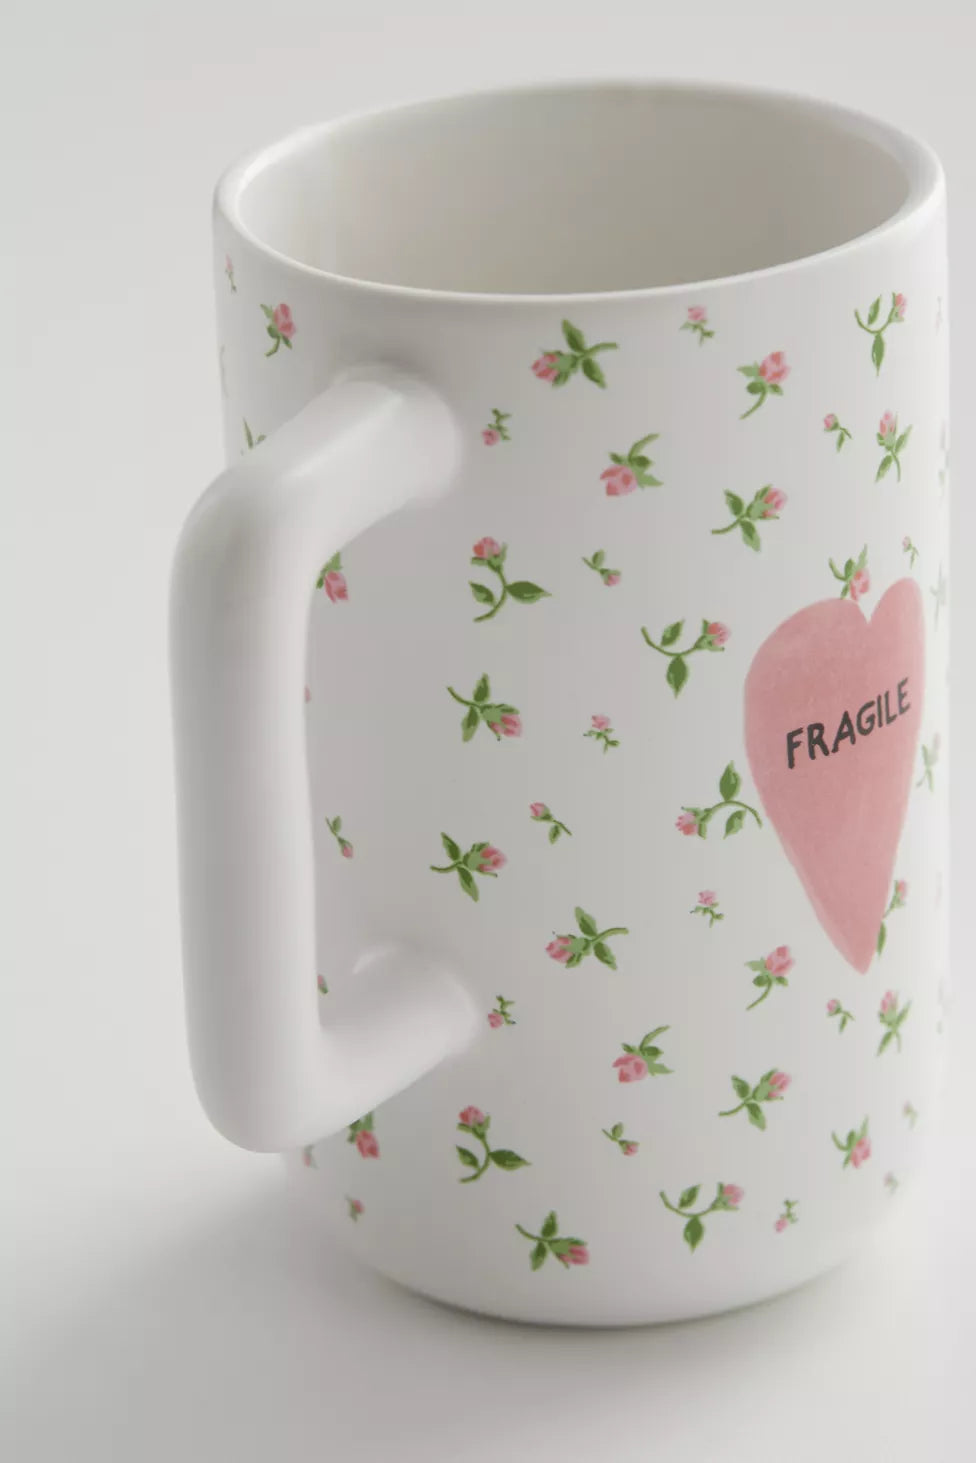 Fragile Mug